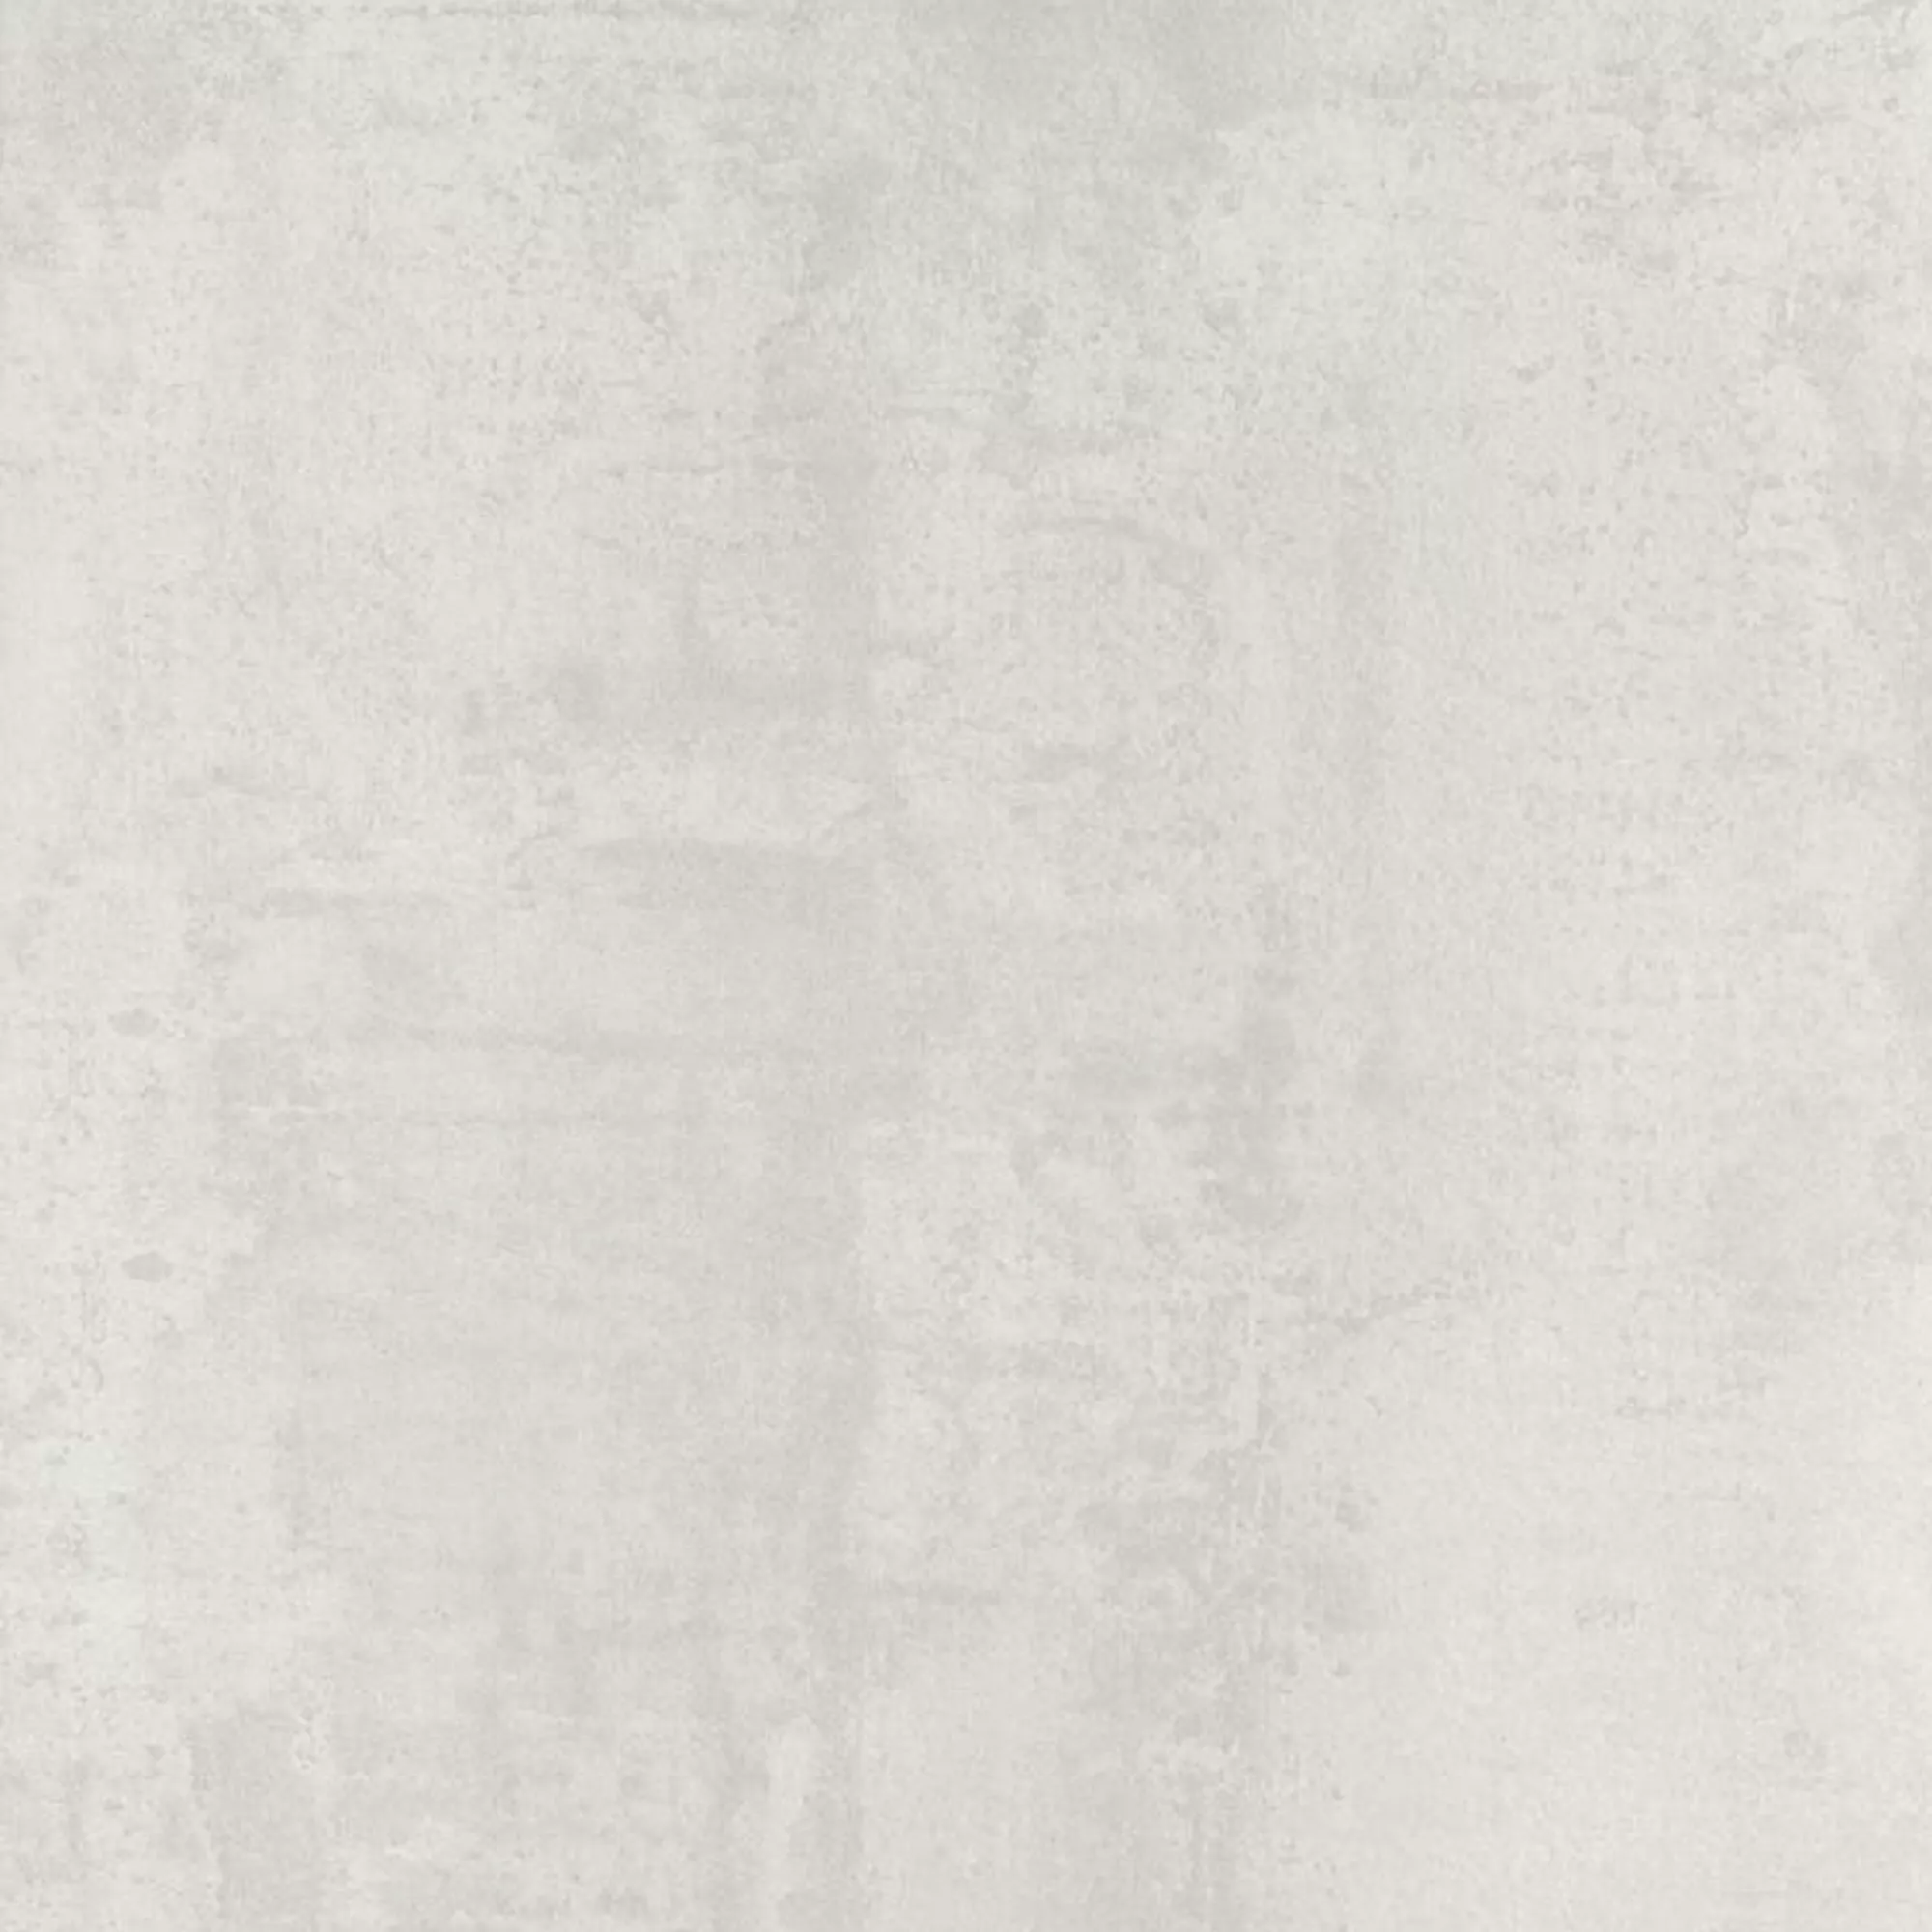 Vzorek Podlahové Dlaždice Herion Kovový Vzhled Lappato Blanco 60x60cm